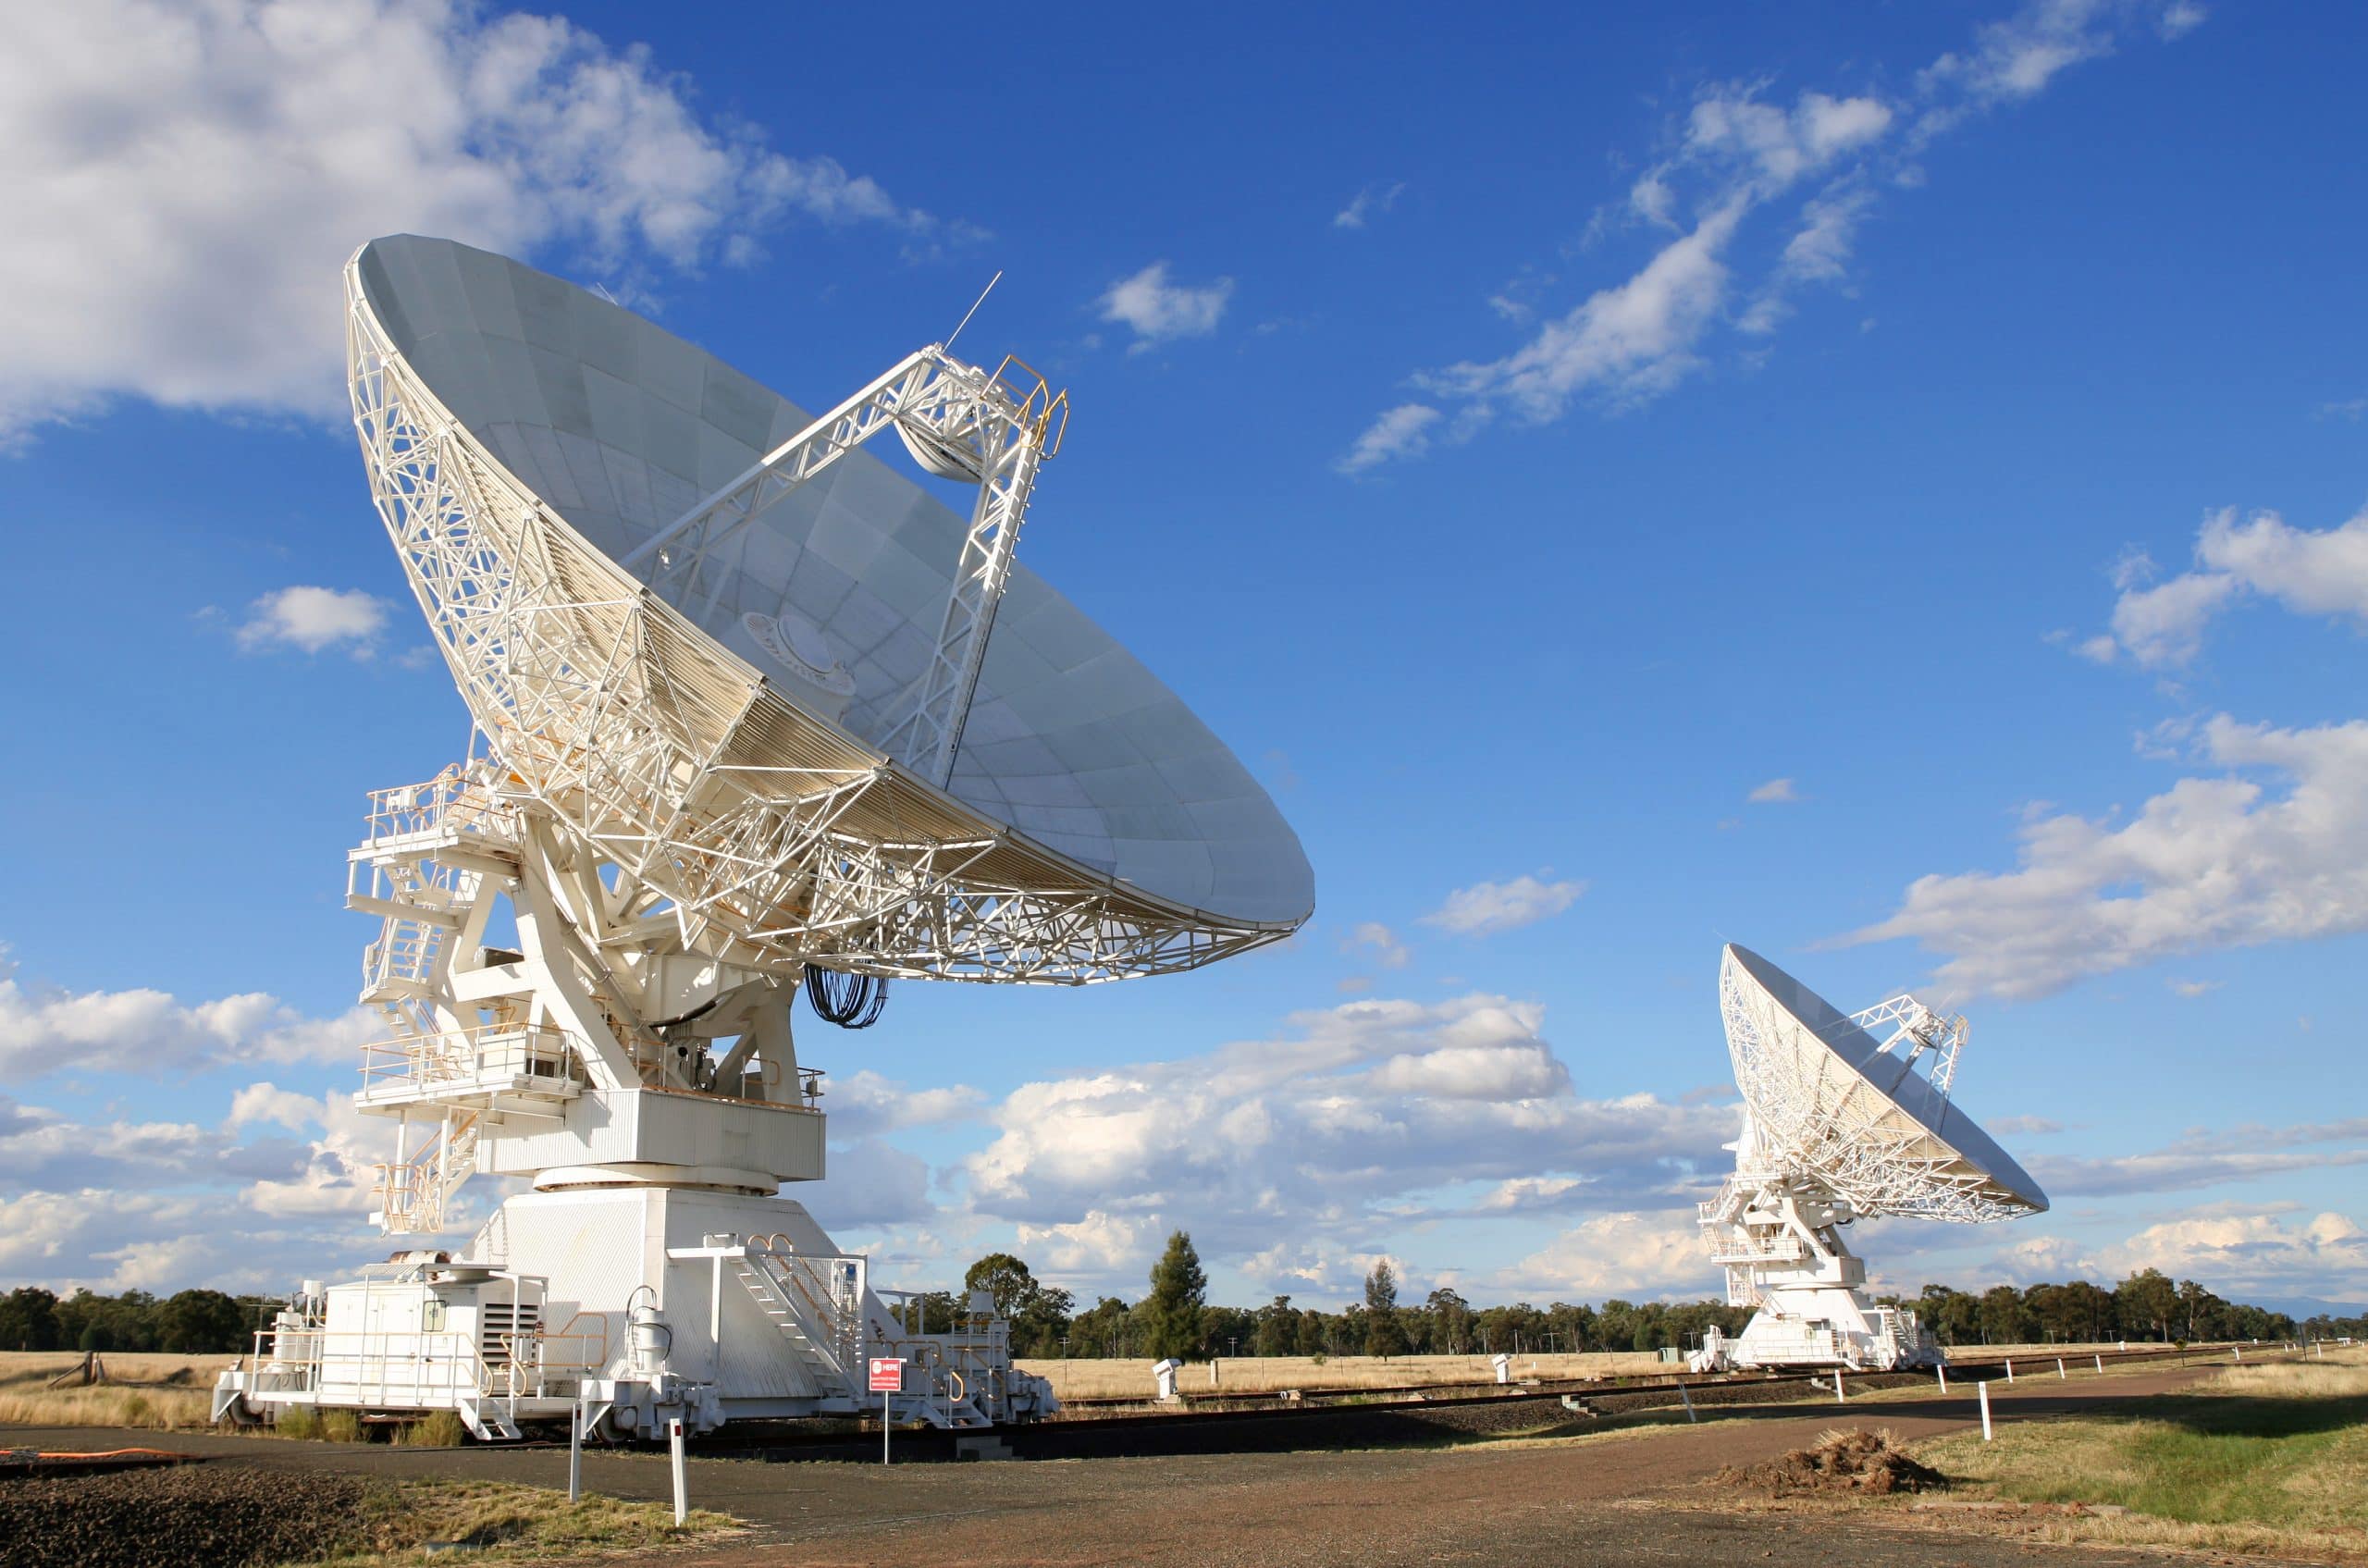 Radio Telescopes